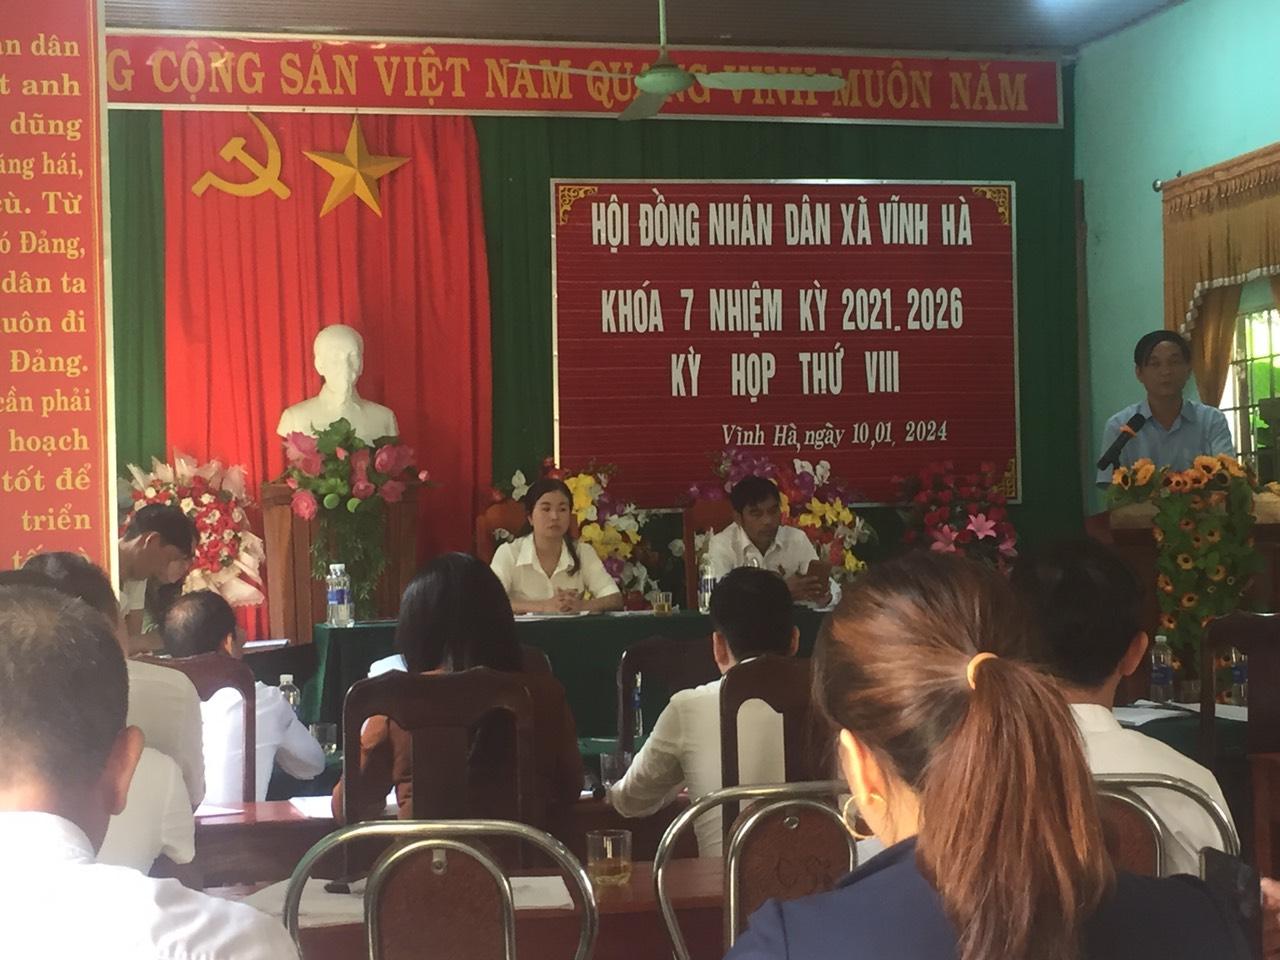 HĐND xã Vĩnh Hà tổ chức kỳ họp thứ VIII, khoá VII, nhiệm kỳ 2021 - 2026